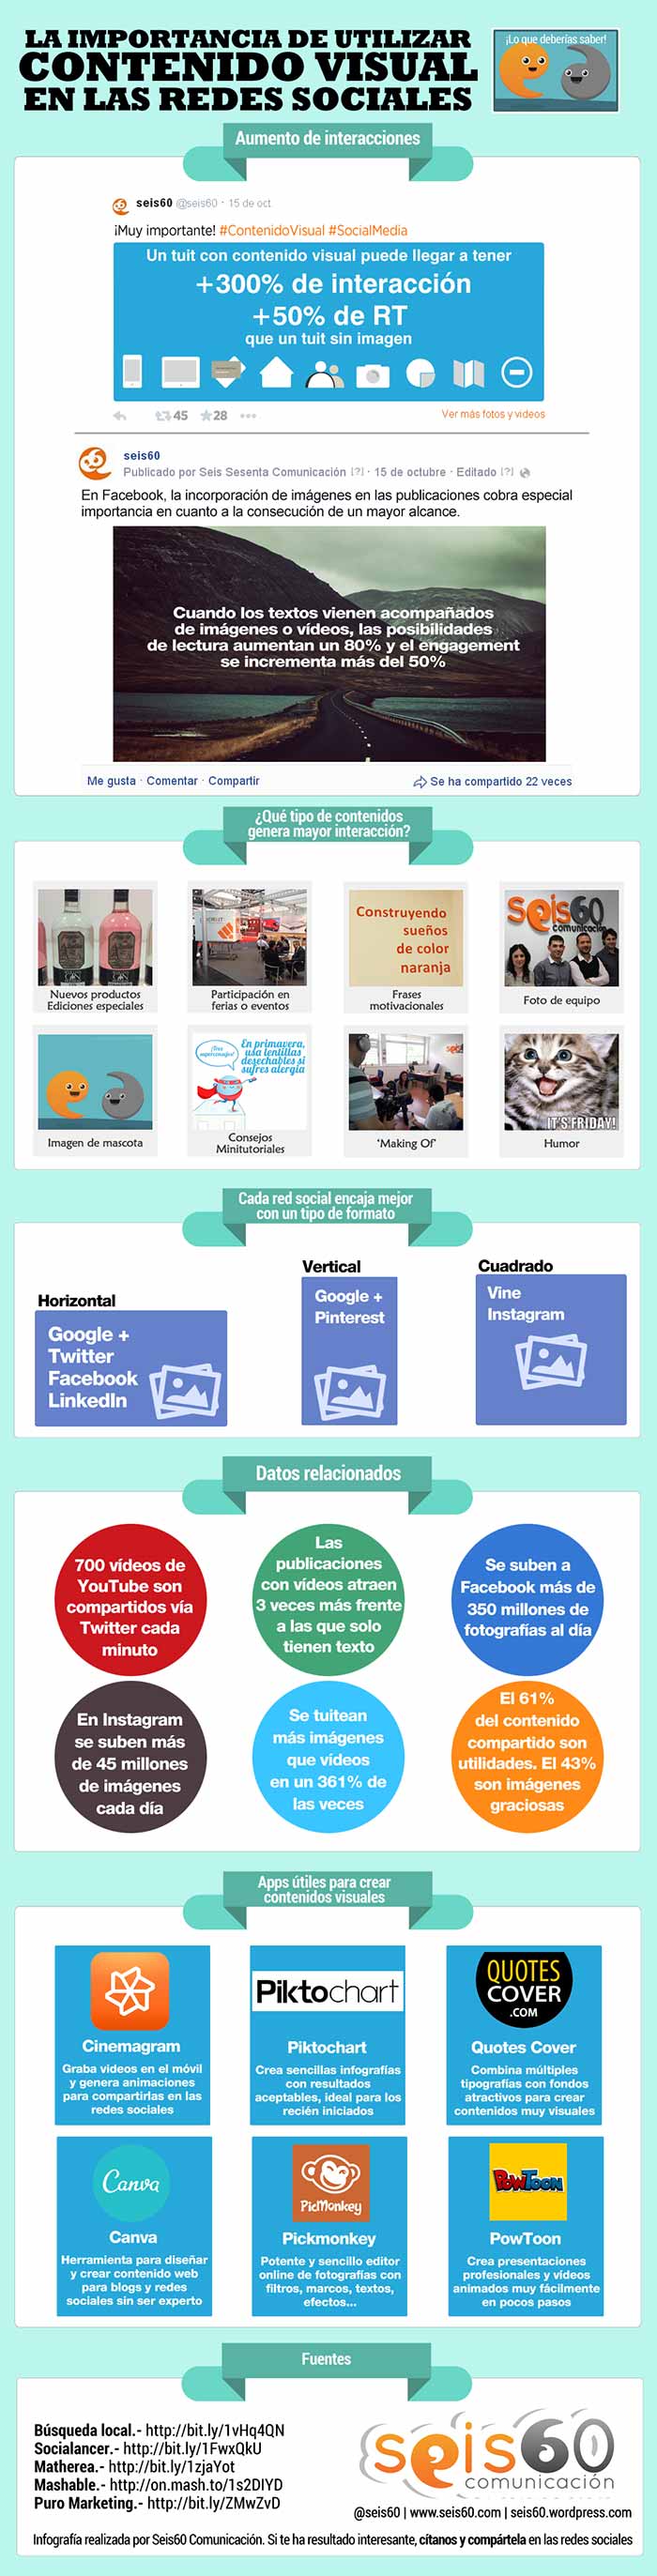 Infografia sobre la importancia de utilizar contenido visual en las redes sociales